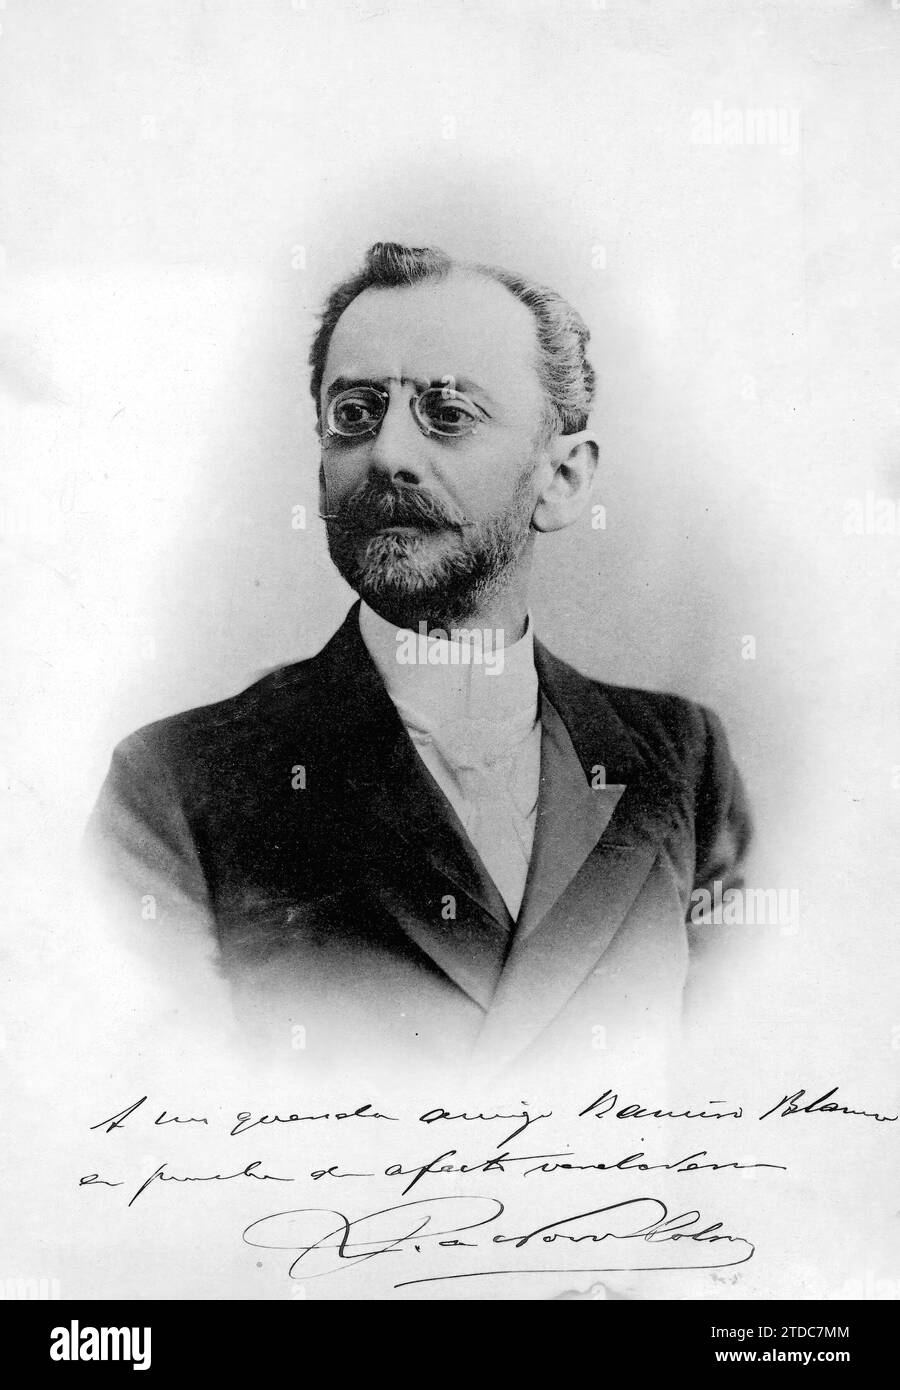 02/13/1909. Don Pedro de Novo y Colson, der gestern sein Amt als Geschichtswissenschaftler angetreten hat. Quelle: Album/Archivo ABC Stockfoto